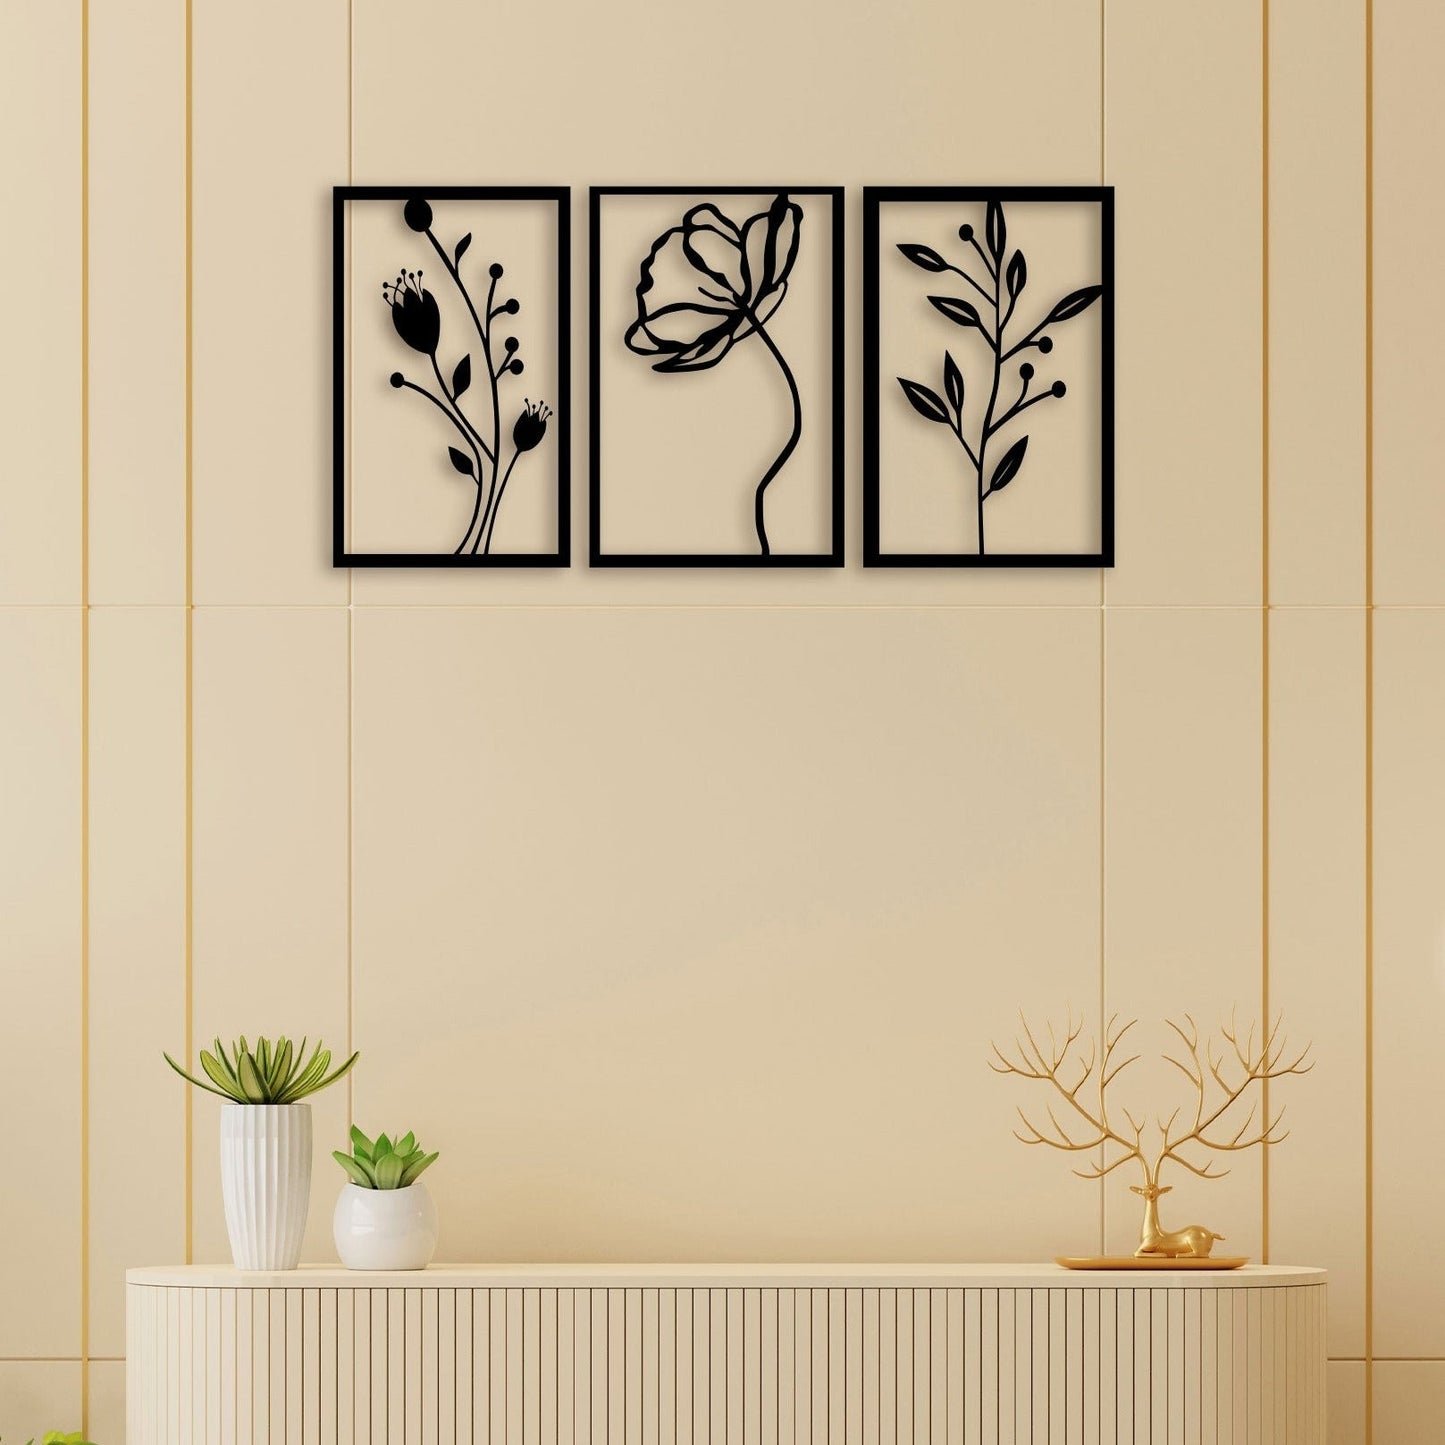 3 Piece Flower Set Wall Art